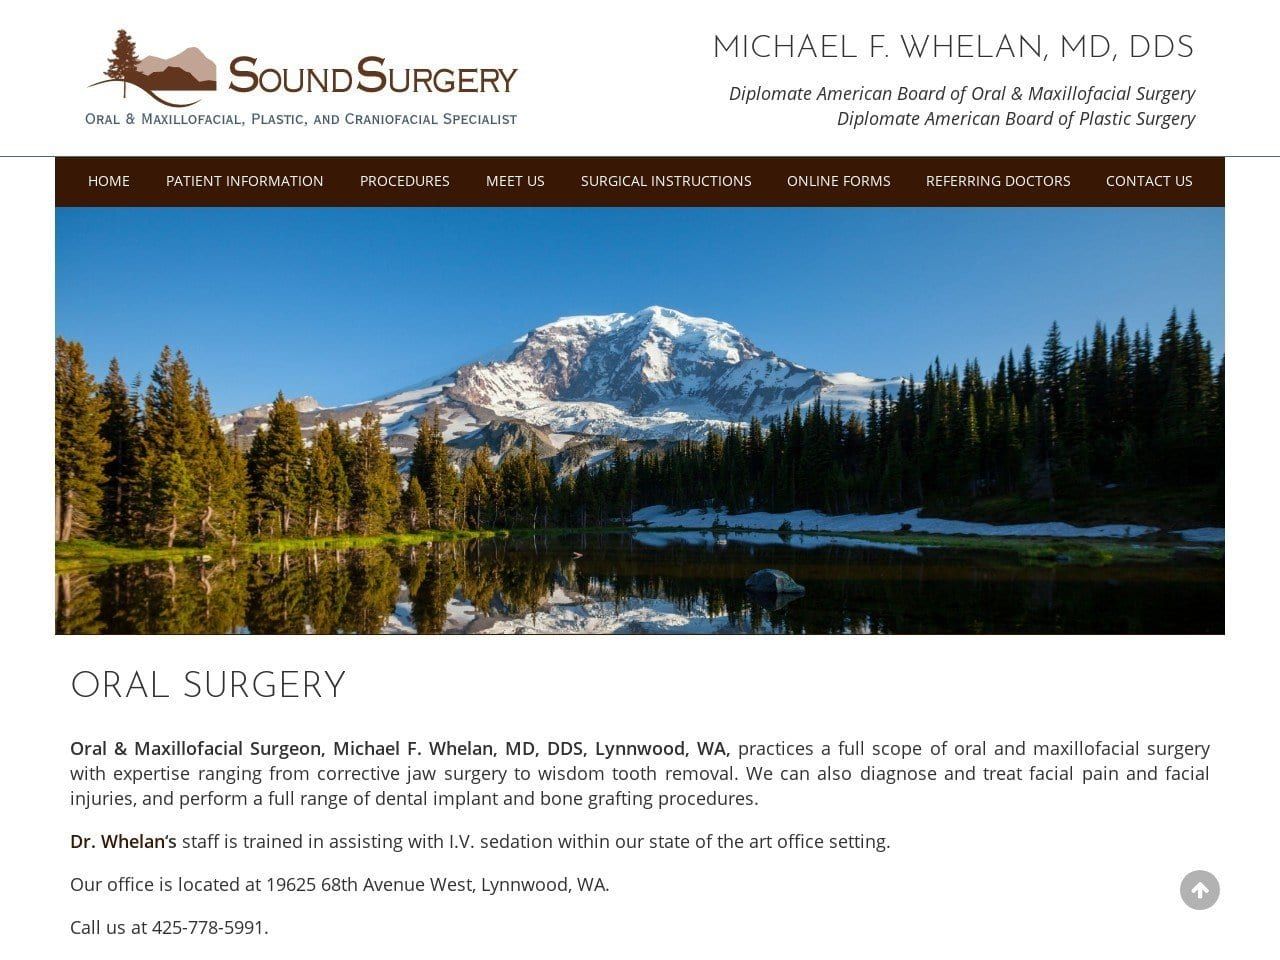 Michael F. Whelan MD DDS Website Screenshot from soundsurgery.com